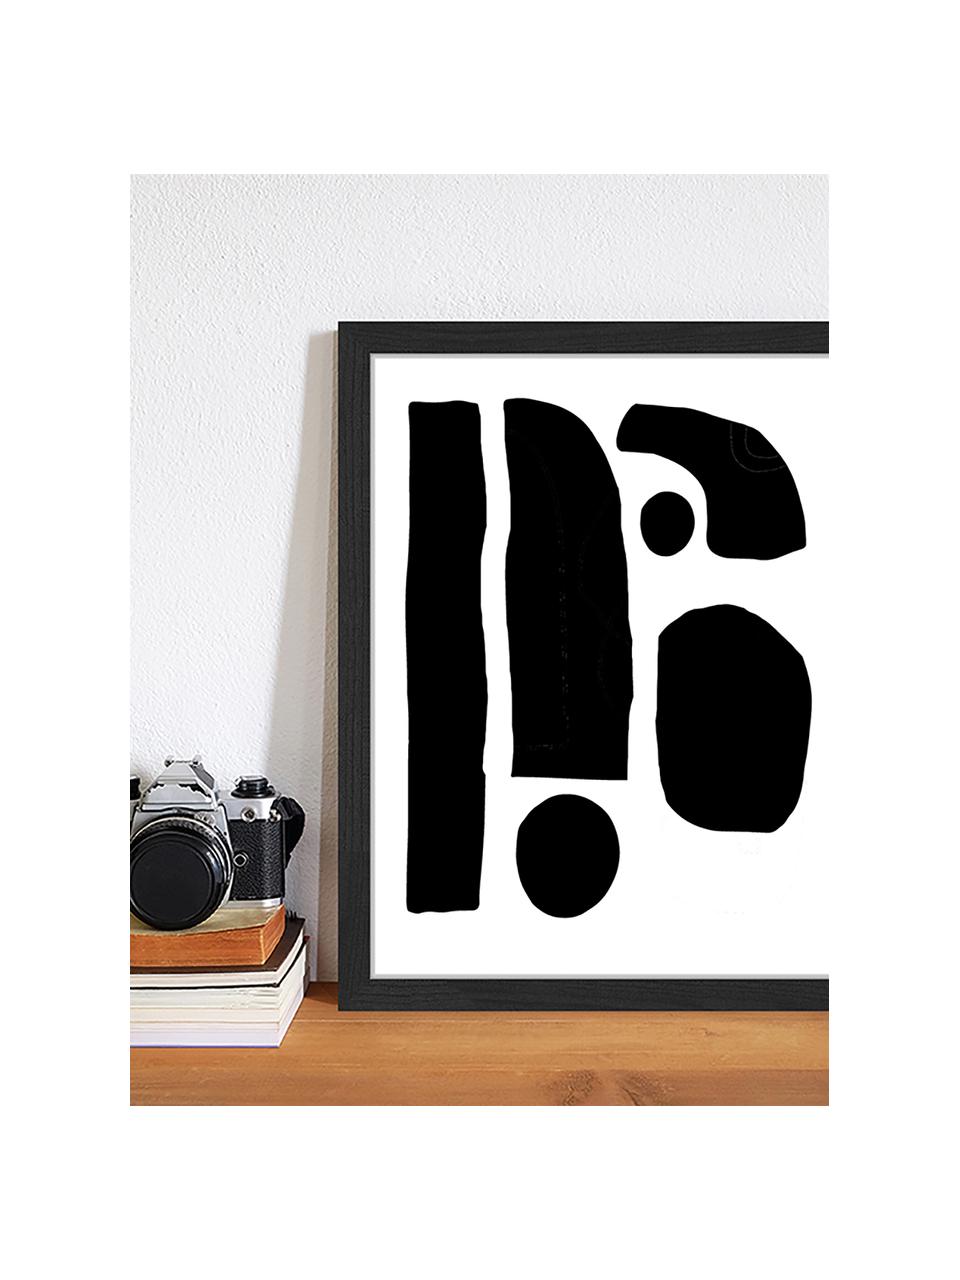 Gerahmter Digitaldruck Geometric Collage, Bild: Digitaldruck auf Papier, , Rahmen: Holz, lackiert, Front: Plexiglas, Schwarz, Weiß, B 33 x H 43 cm